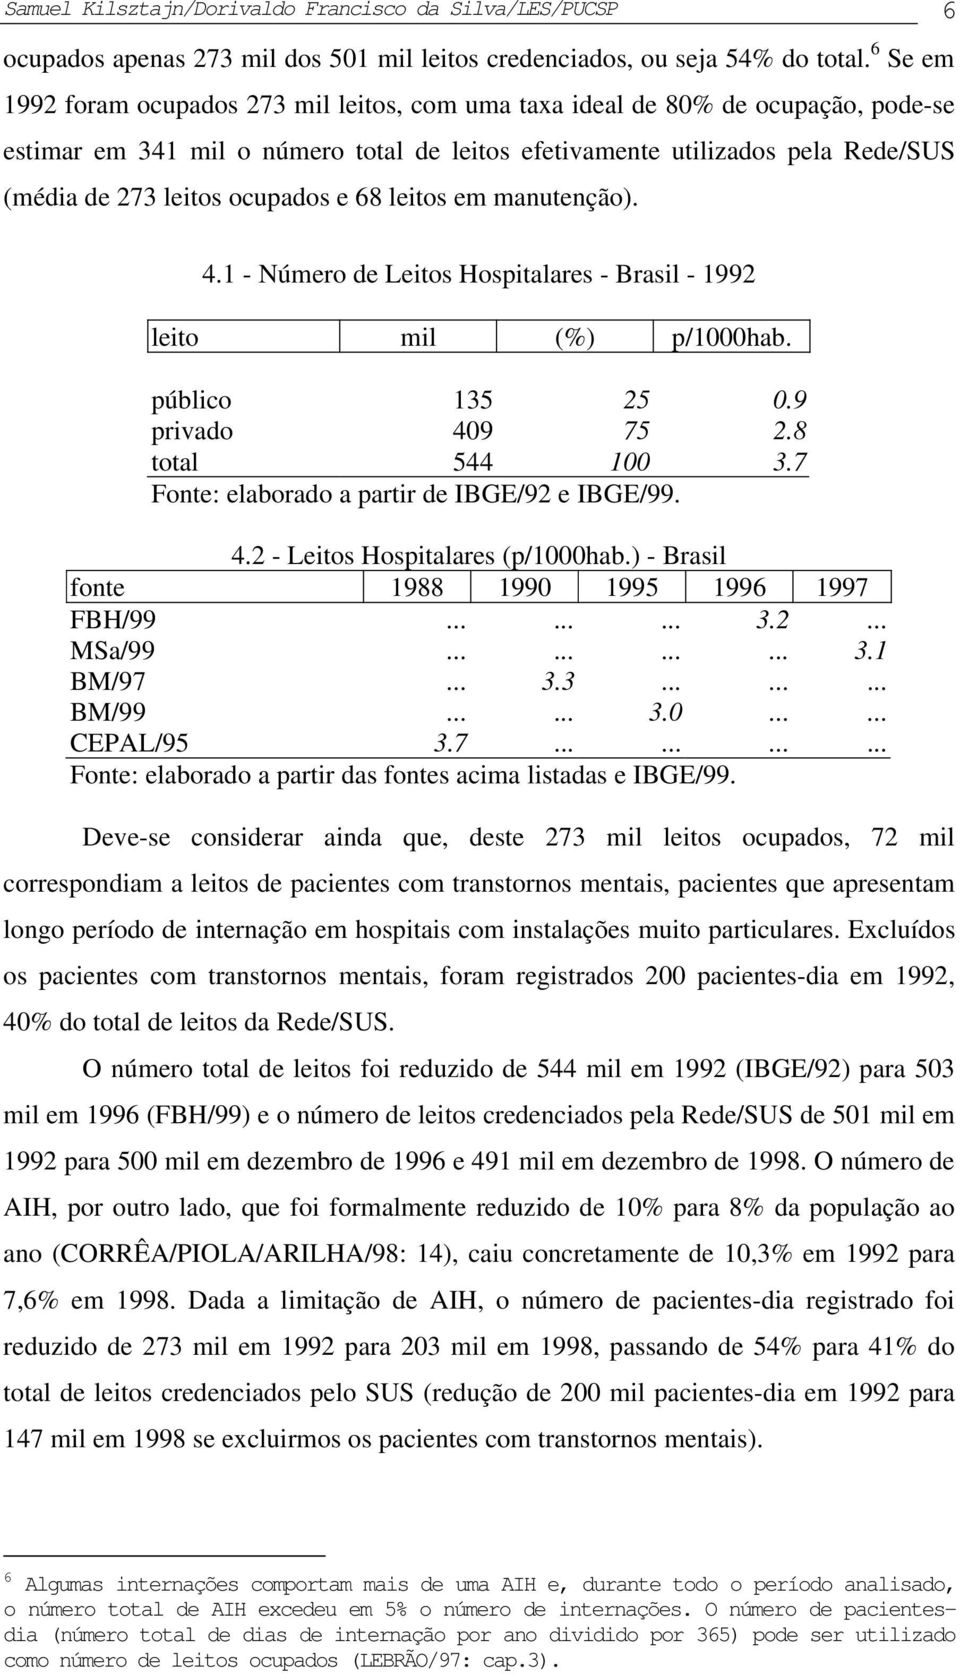 ocupados e 68 leitos em manutenção). 4.1 - Número de Leitos Hospitalares - Brasil - 1992 leito mil (%) p/1000hab. público 135 25 0.9 privado 409 75 2.8 total 544 100 3.